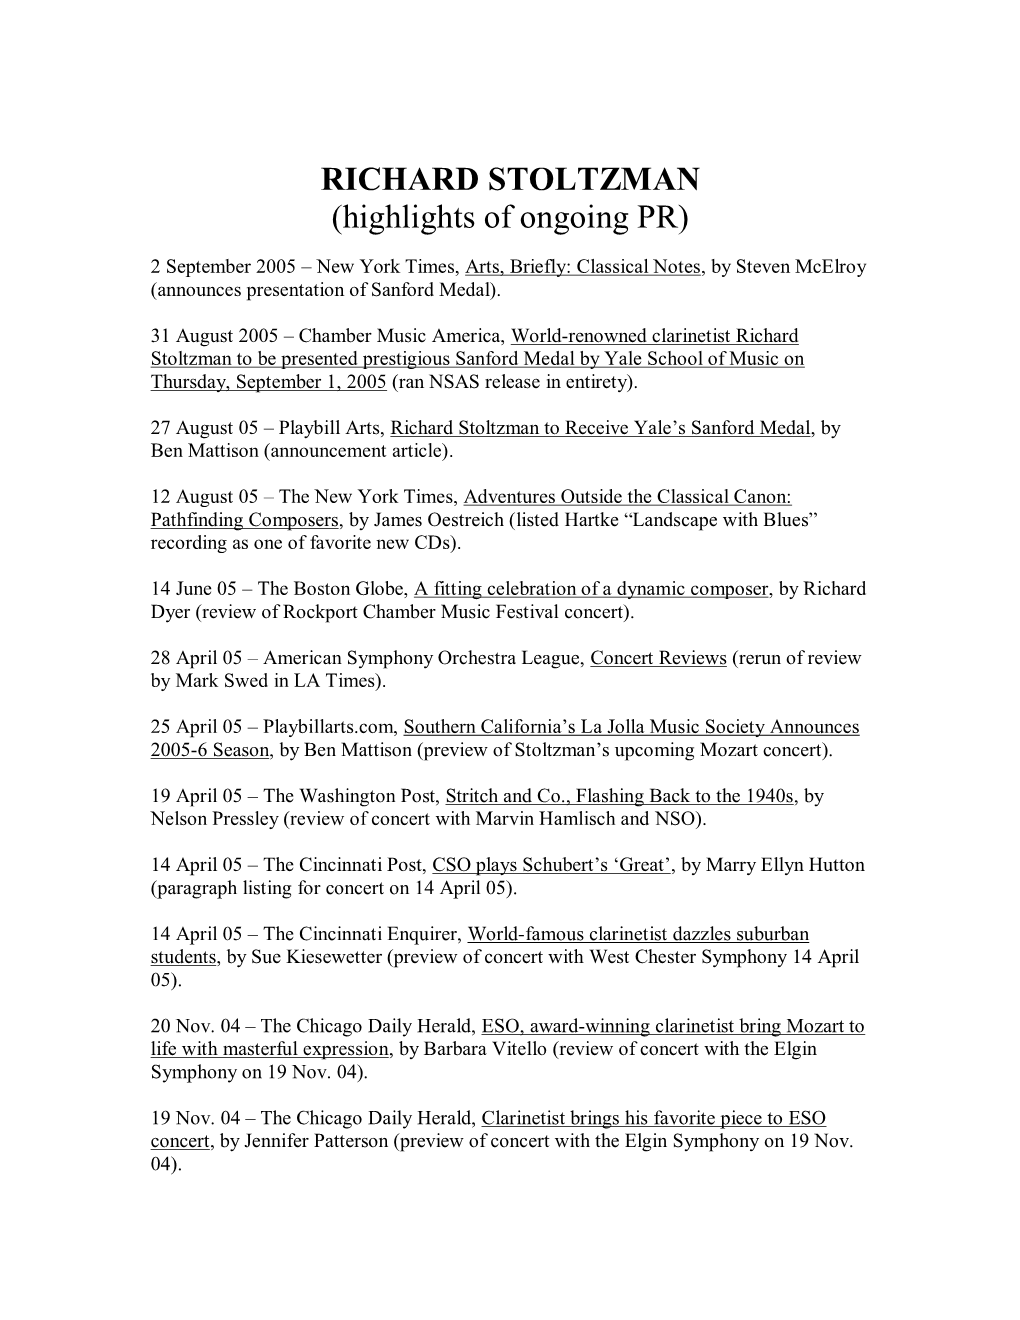 RICHARD STOLTZMAN (Highlights of Ongoing PR)